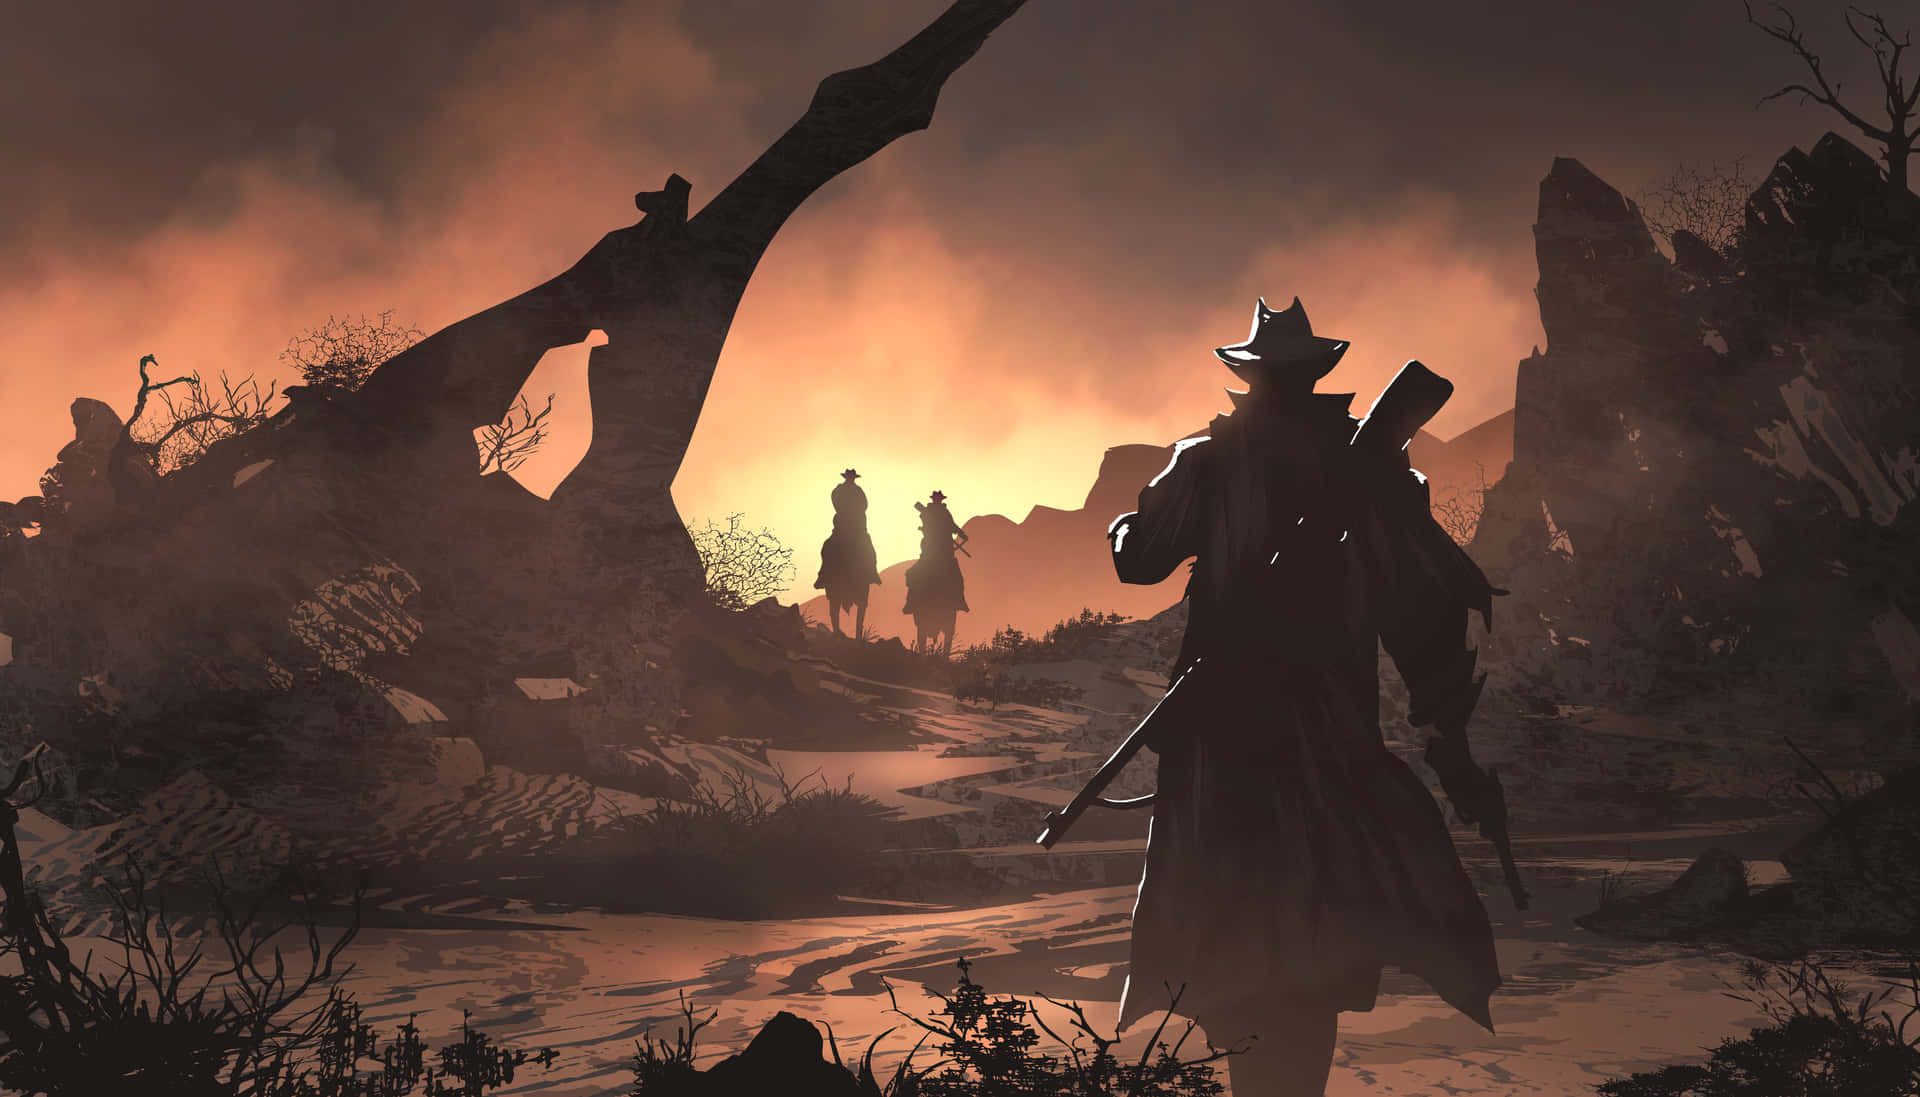 Detaljer om Wild West i 4K - Red Dead Redemption 2 - Wallpaper